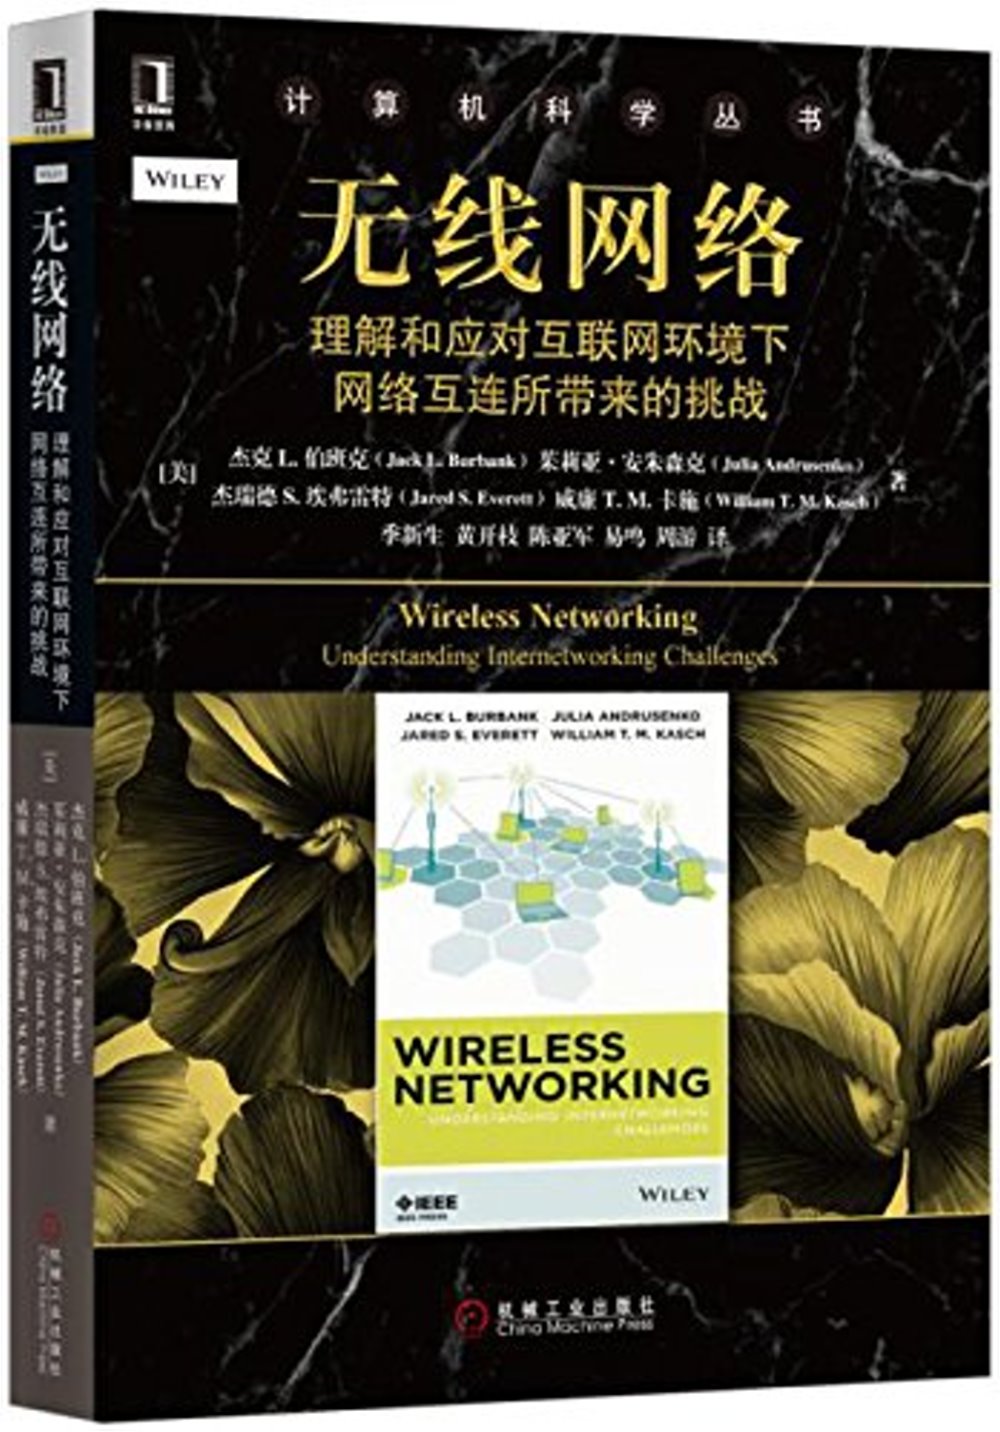 無線網絡：理解和應對互聯網環境下網絡互連所帶來的挑戰